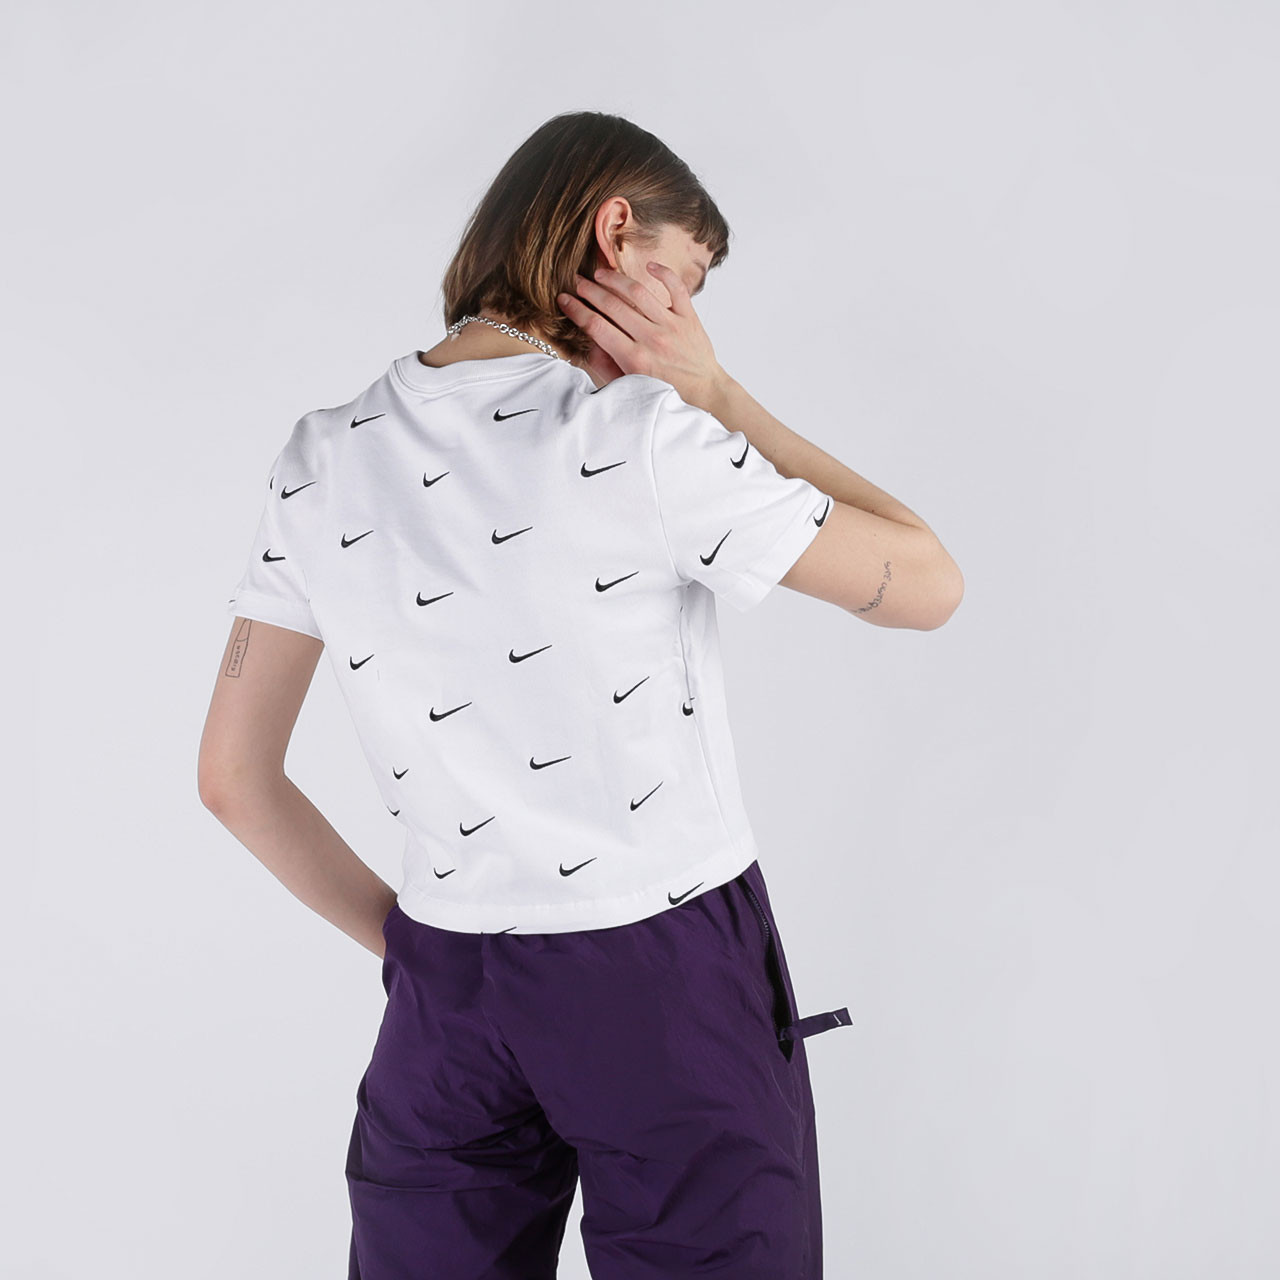 женская белая футболка Nike Swoosh Logo T-Shirt CK4092-100 - цена, описание, фото 2